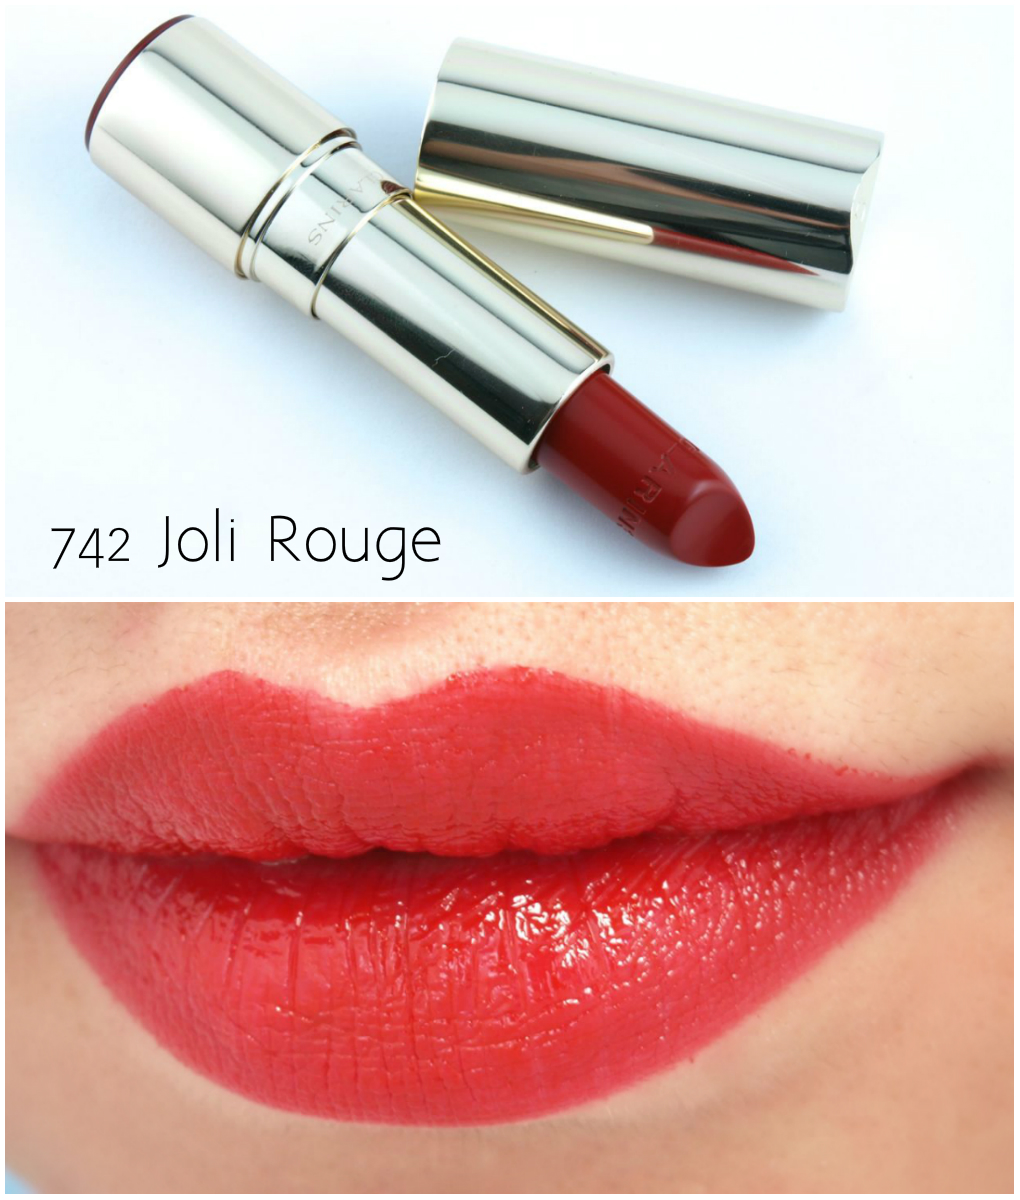 Clarins Fall 2015 Joli Rouge Moisturizing Long-Wearing Lipsticks ...